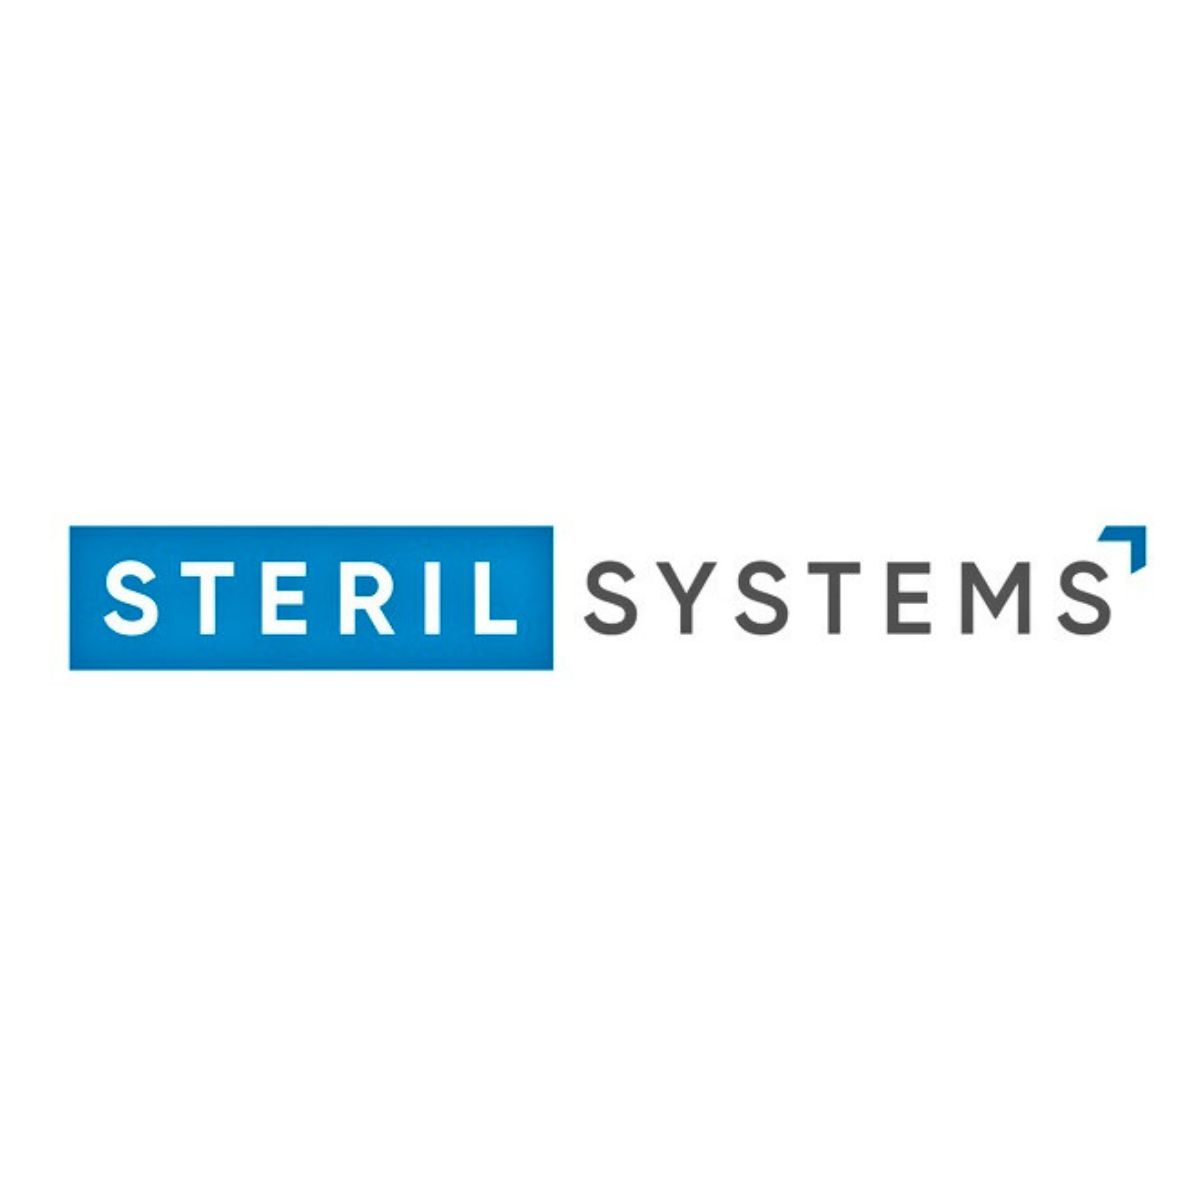 STERILSYSTEMS